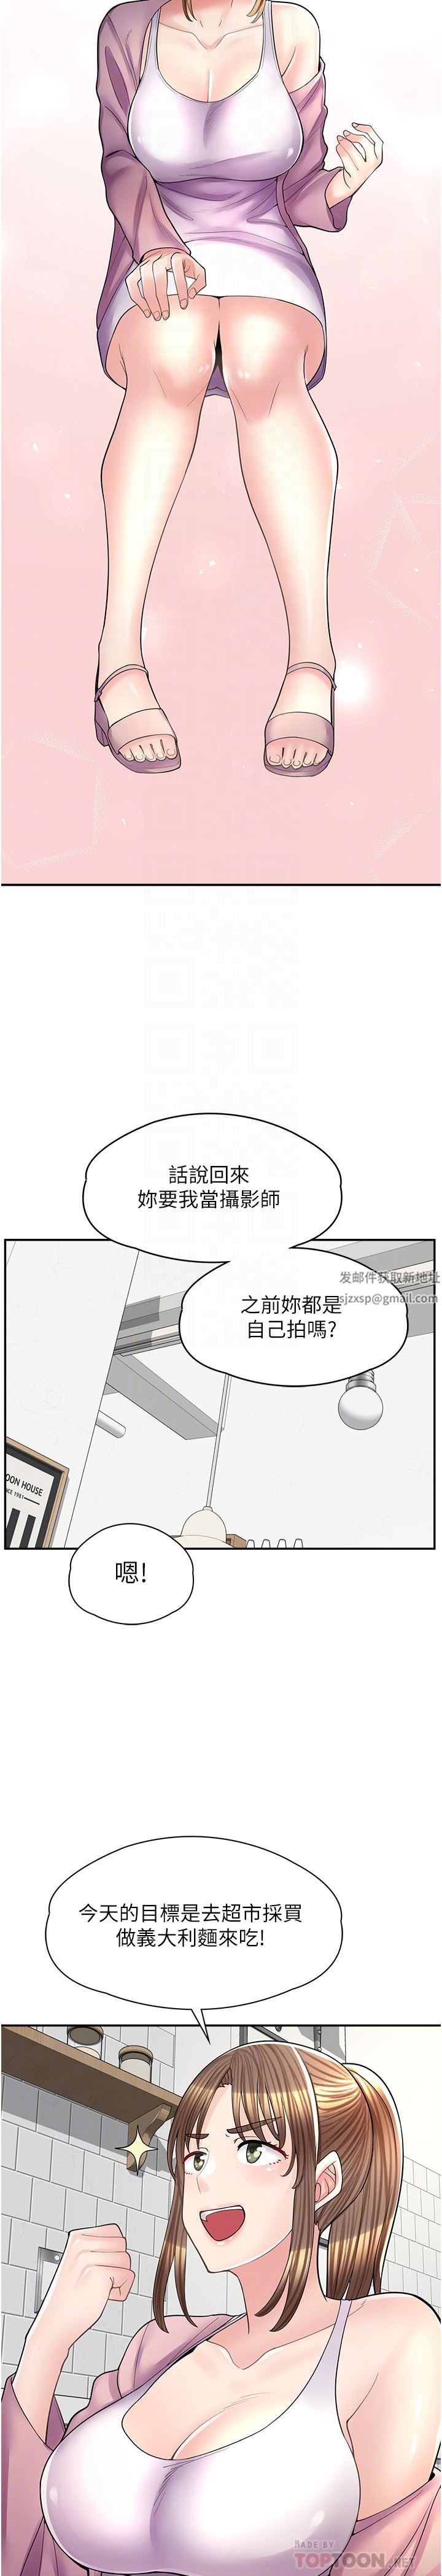 漫畫店工讀生-第14章-图片6